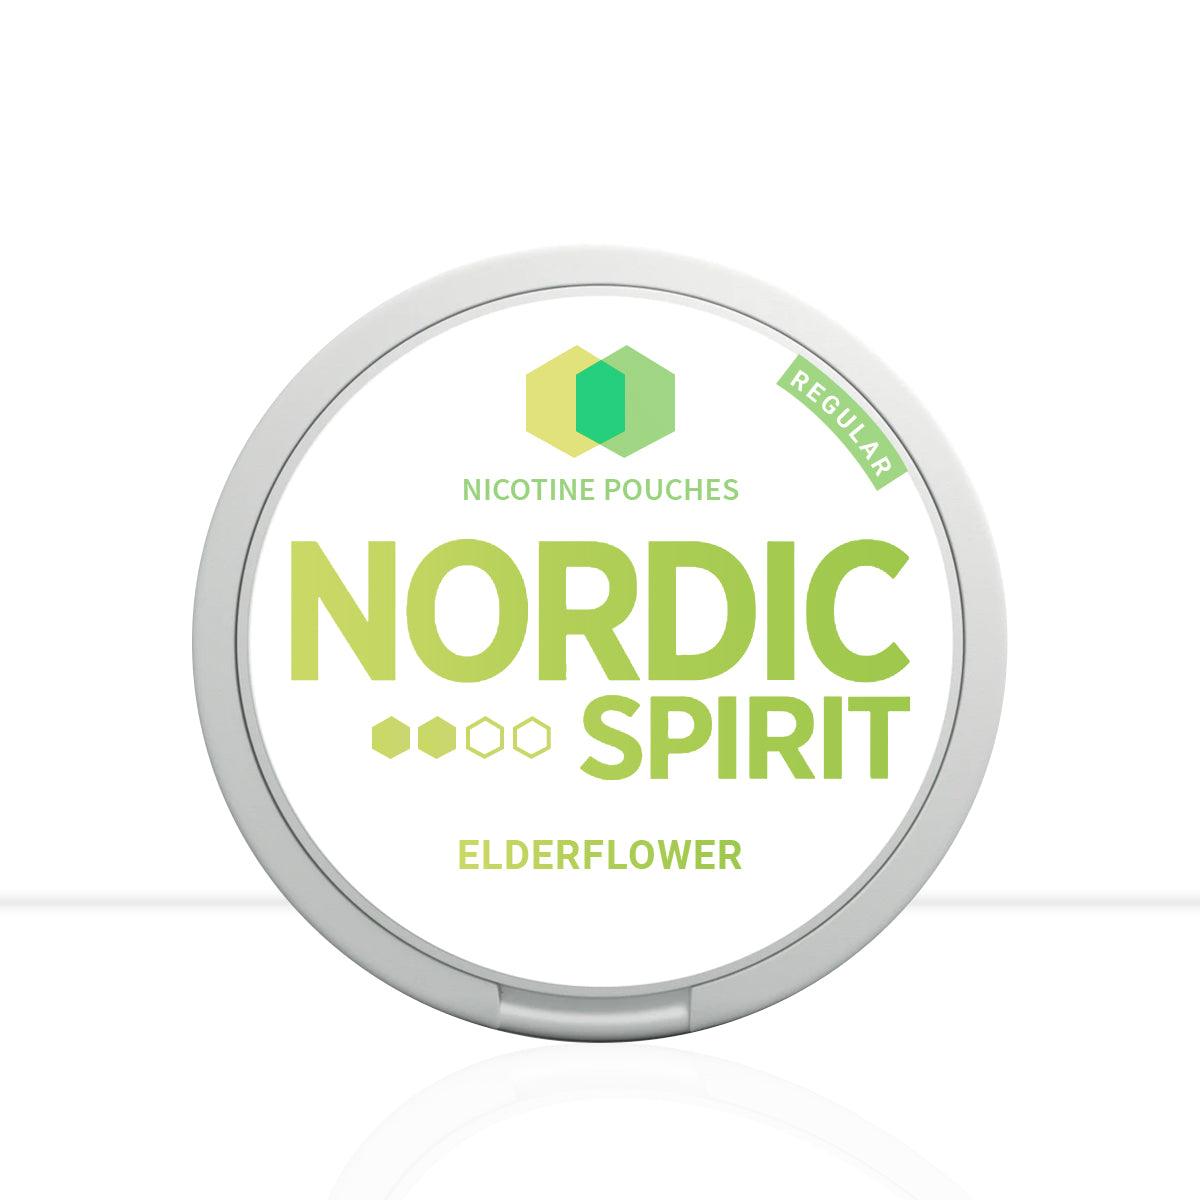 Nordic Spirit Nicotine Pouches Elderflower - Accessories